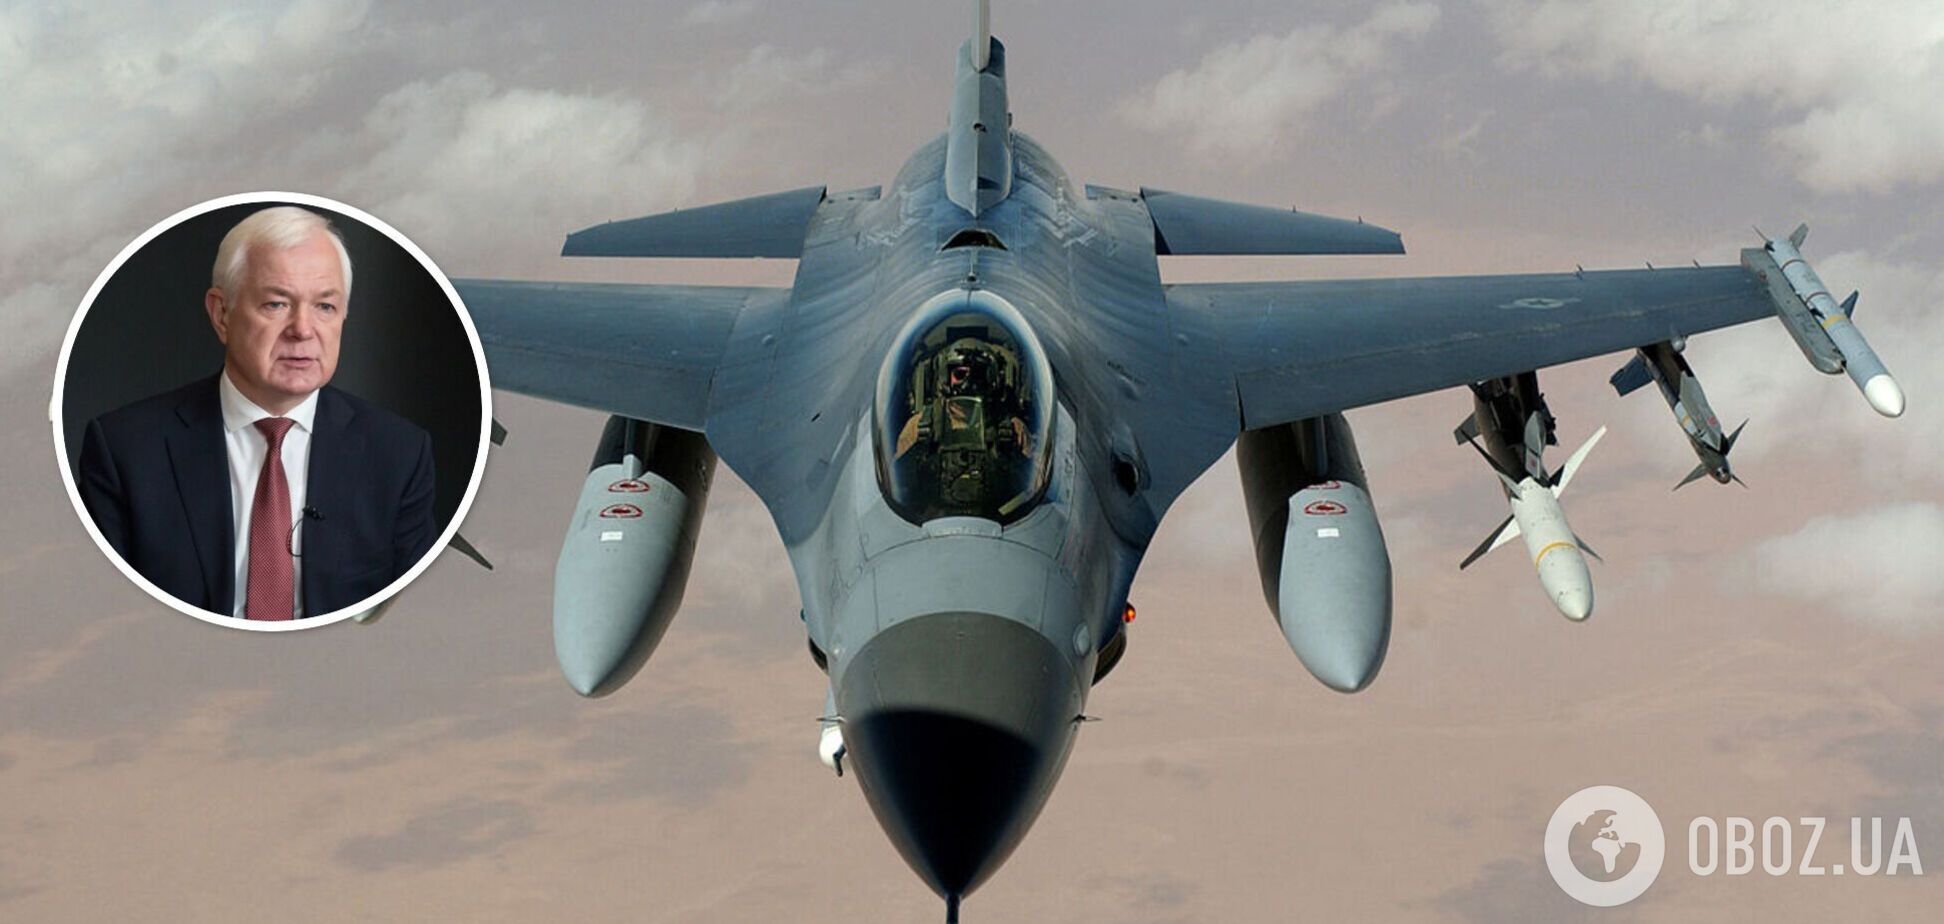 Системный воздушный щит: генерал назвал количество F-16, которое защитит от путинских ракет